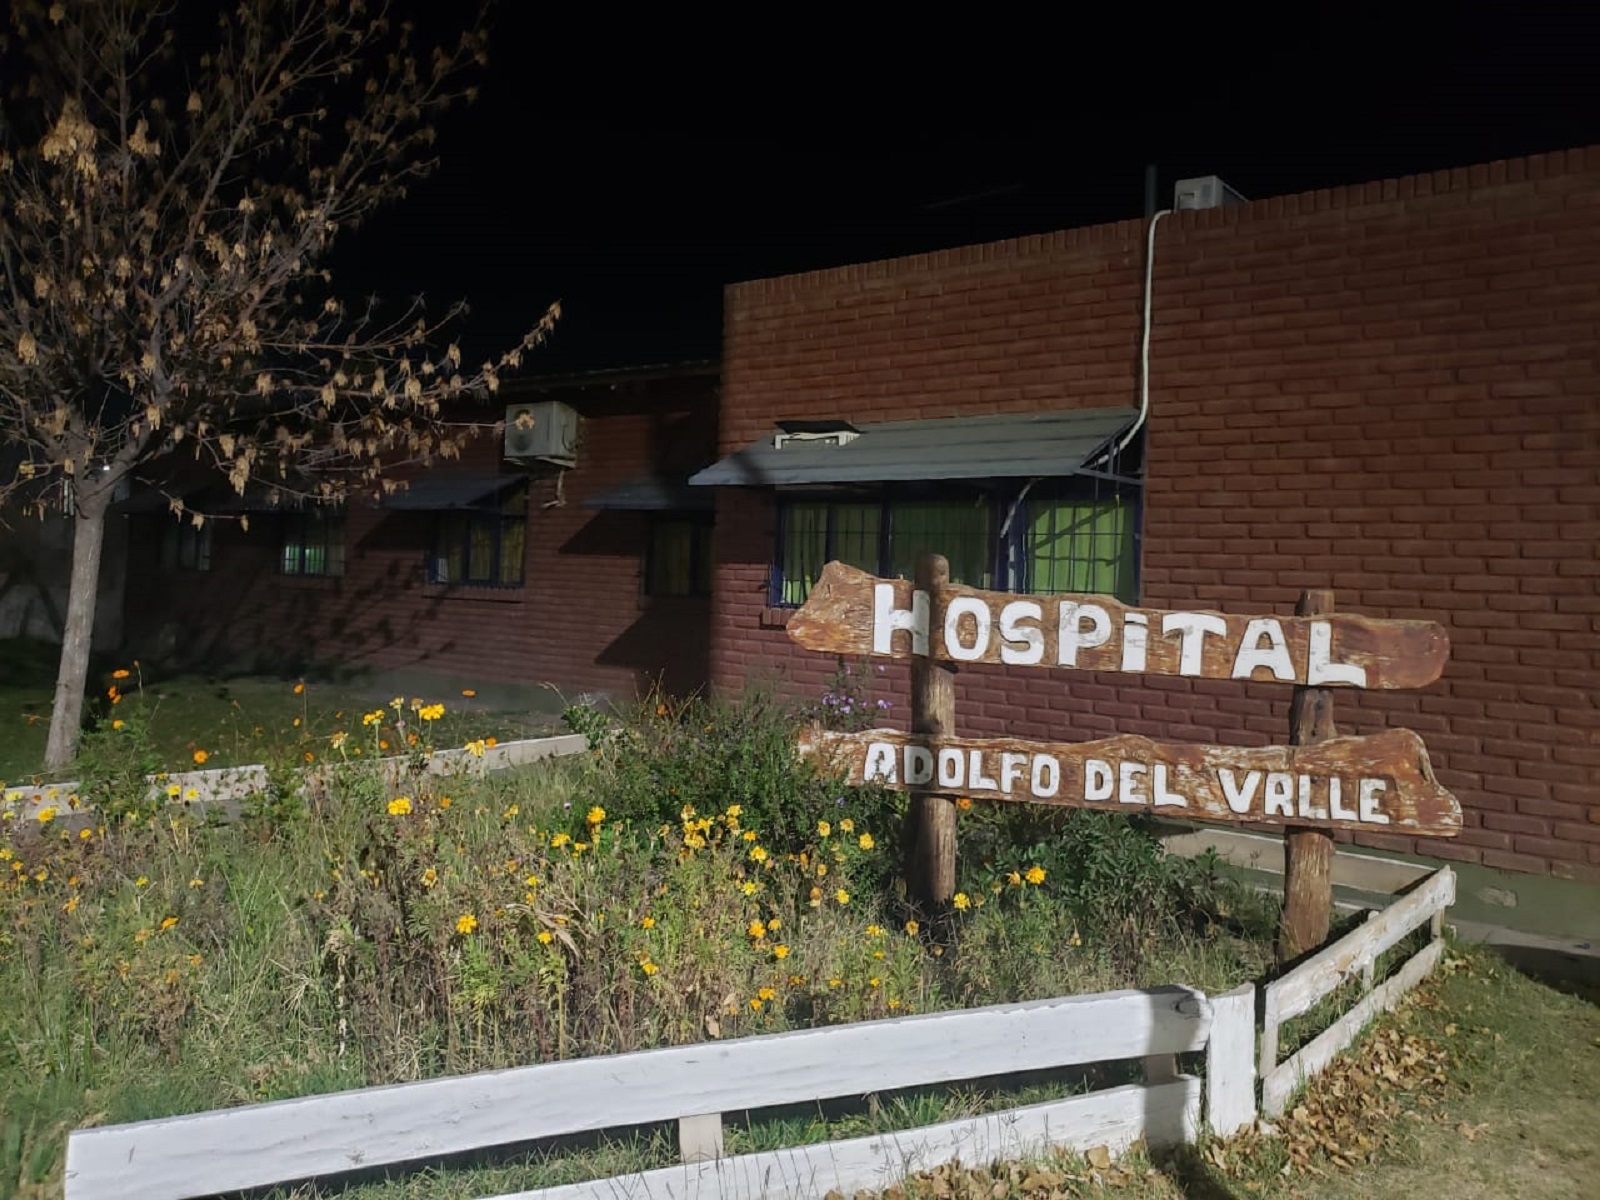 El duro mensaje del hospital de Senillosa a los vecinos: "los médicos somos humanos"